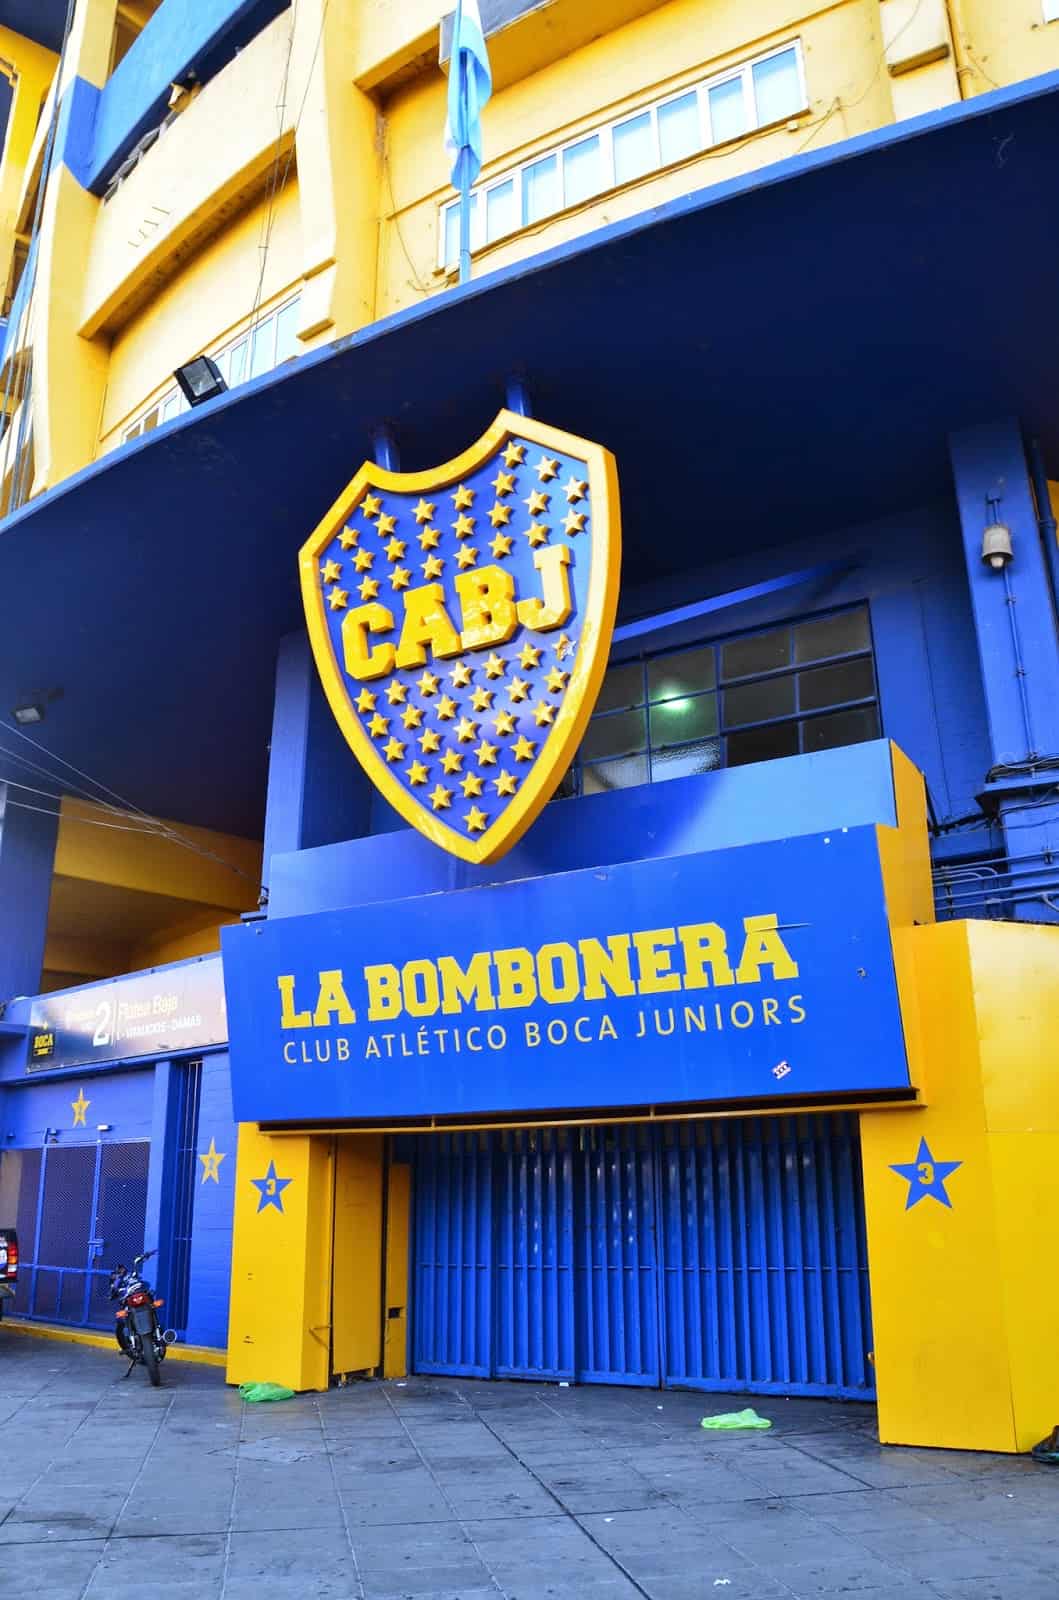 La Bombonera in La Boca, Buenos Aires, Argentina